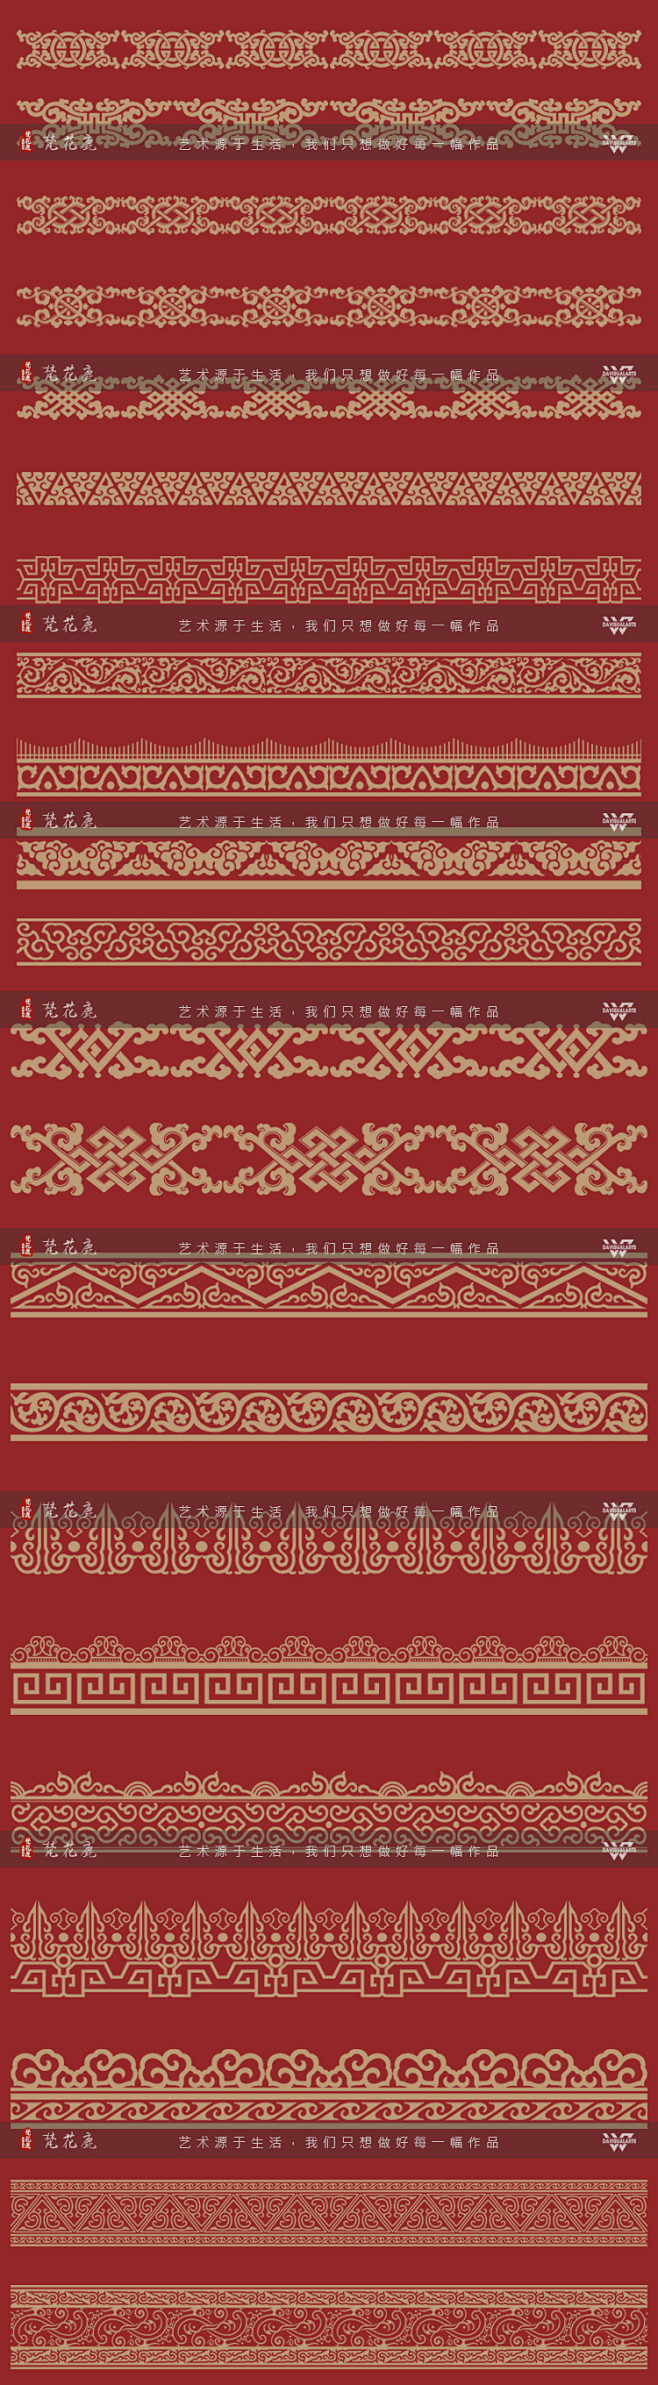 中国风古代传统宫廷边框图案中式华丽纹样E...